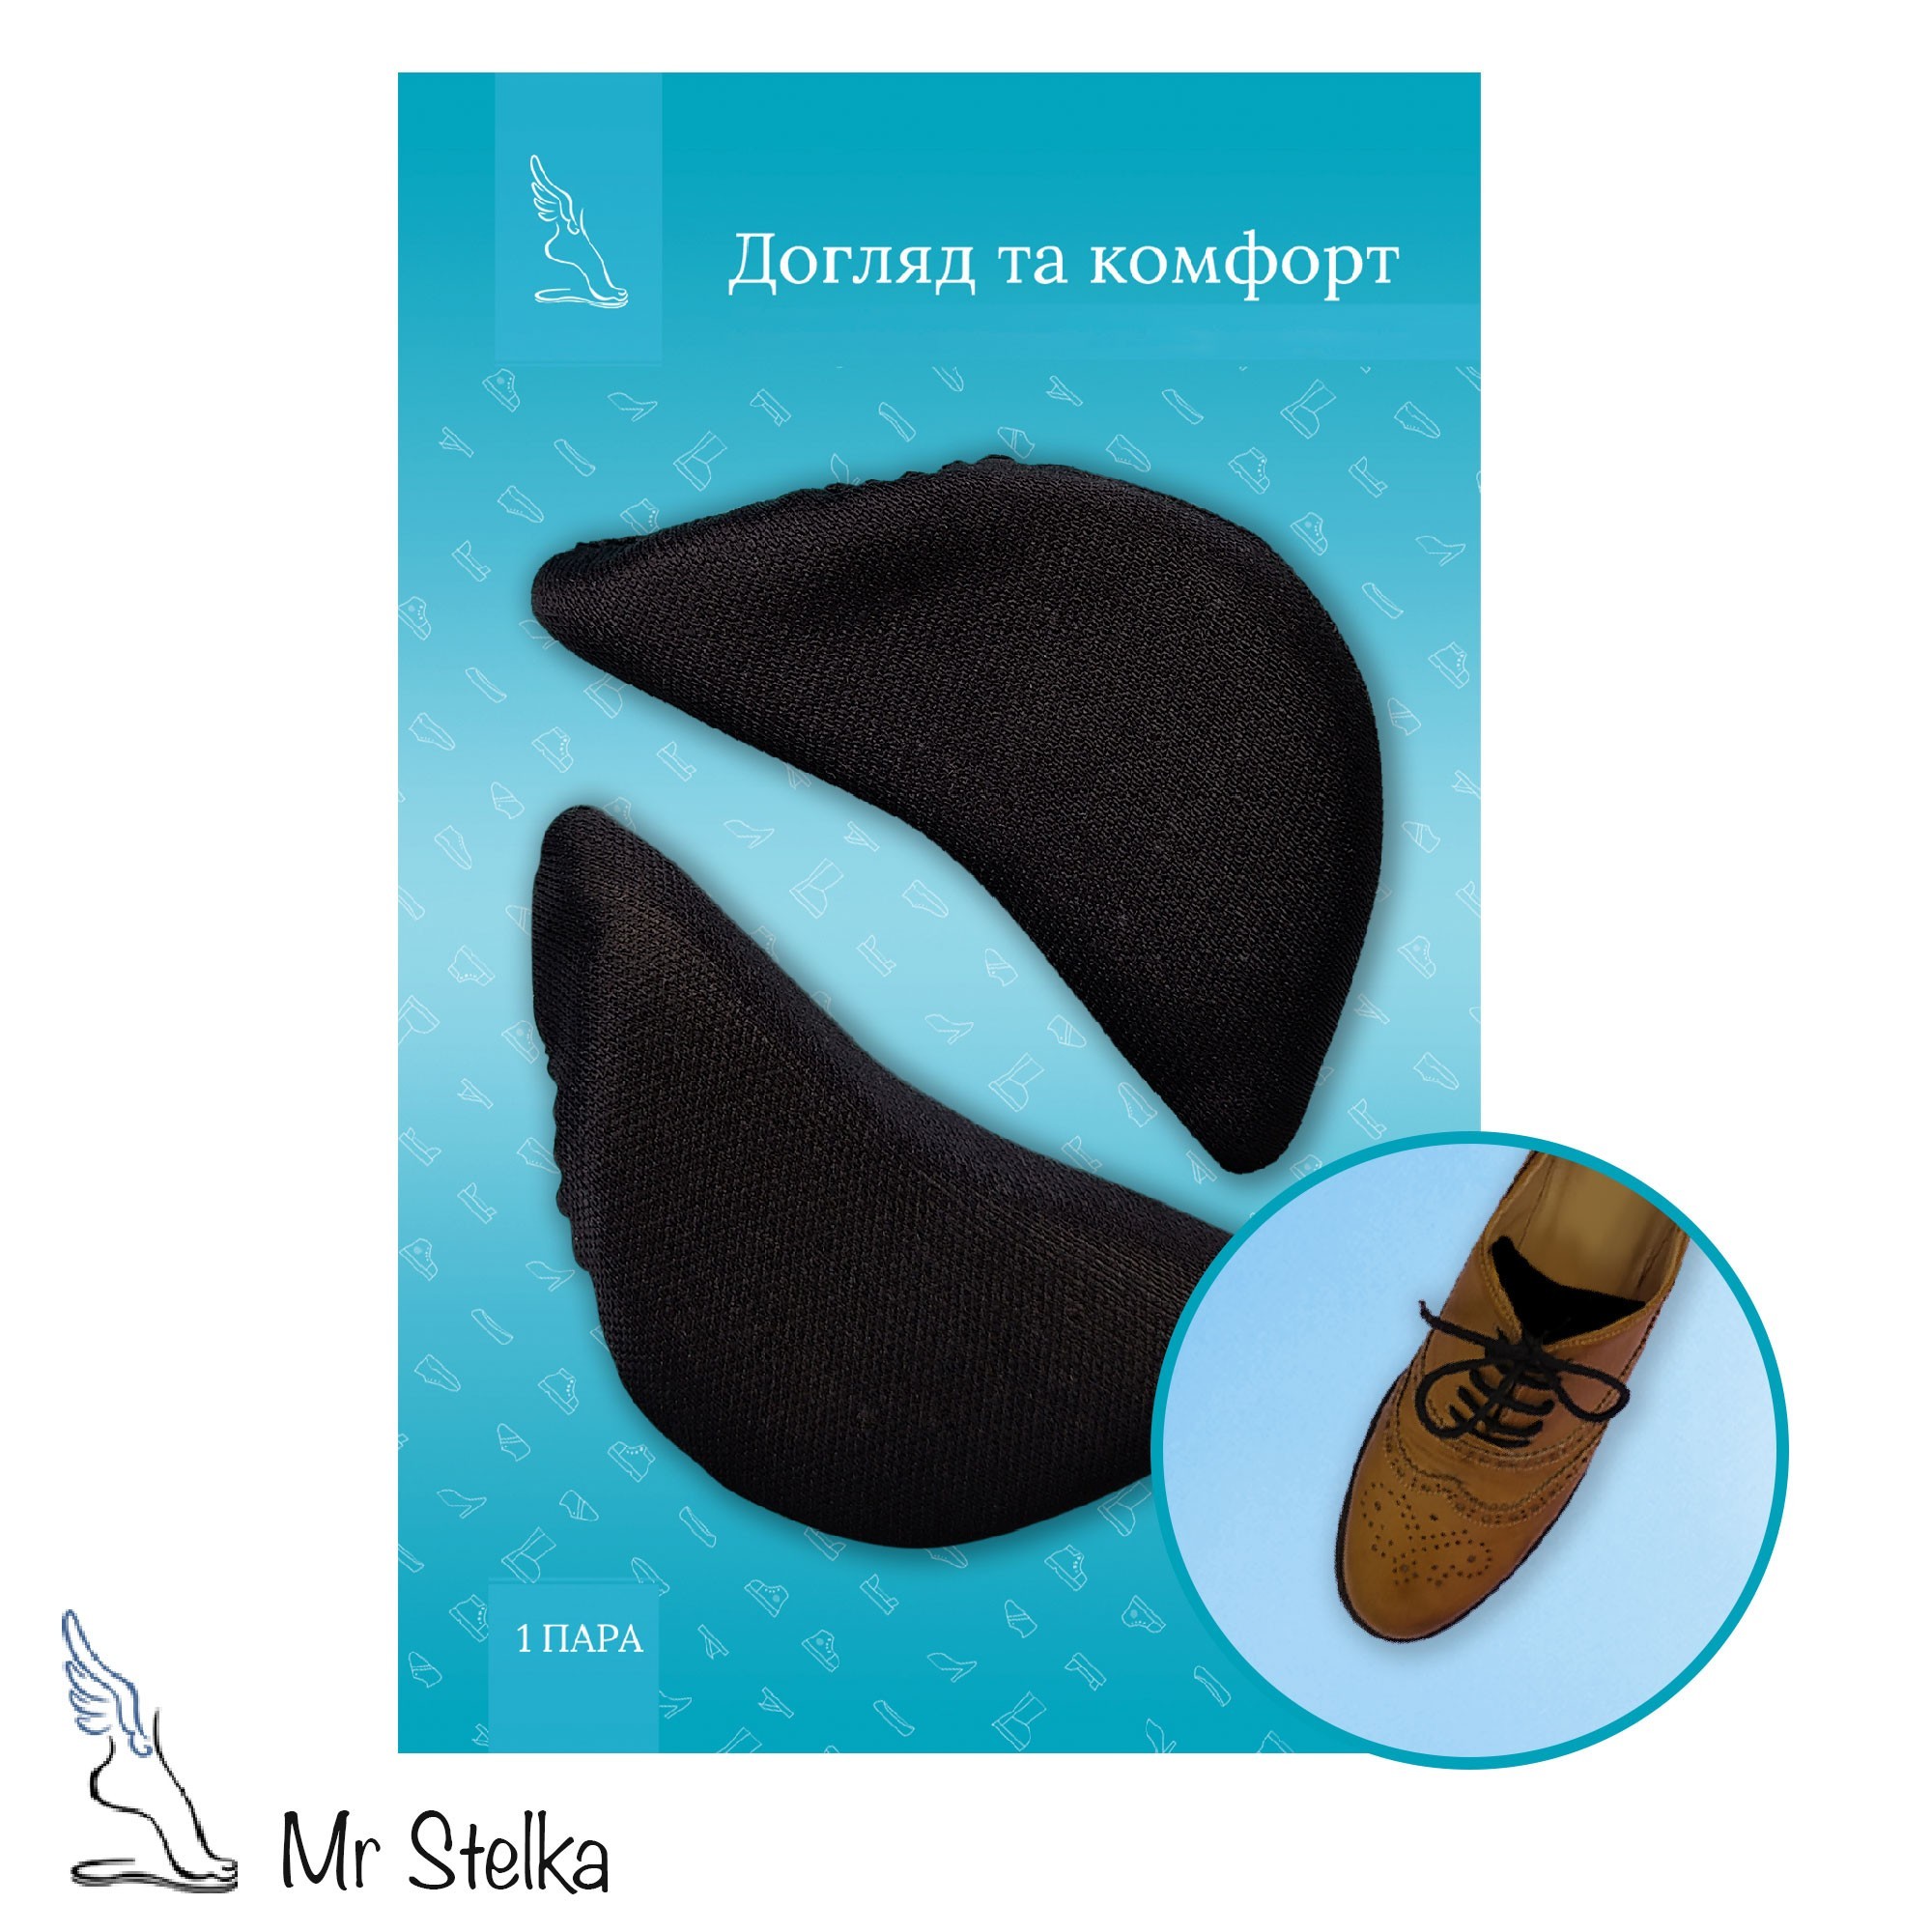 Поролоновые вкладыши для уменьшения размера обуви 2шт, вставки черные N-11№1 от продавца: Mr Stelki – в интернет-магазине ROZETKA